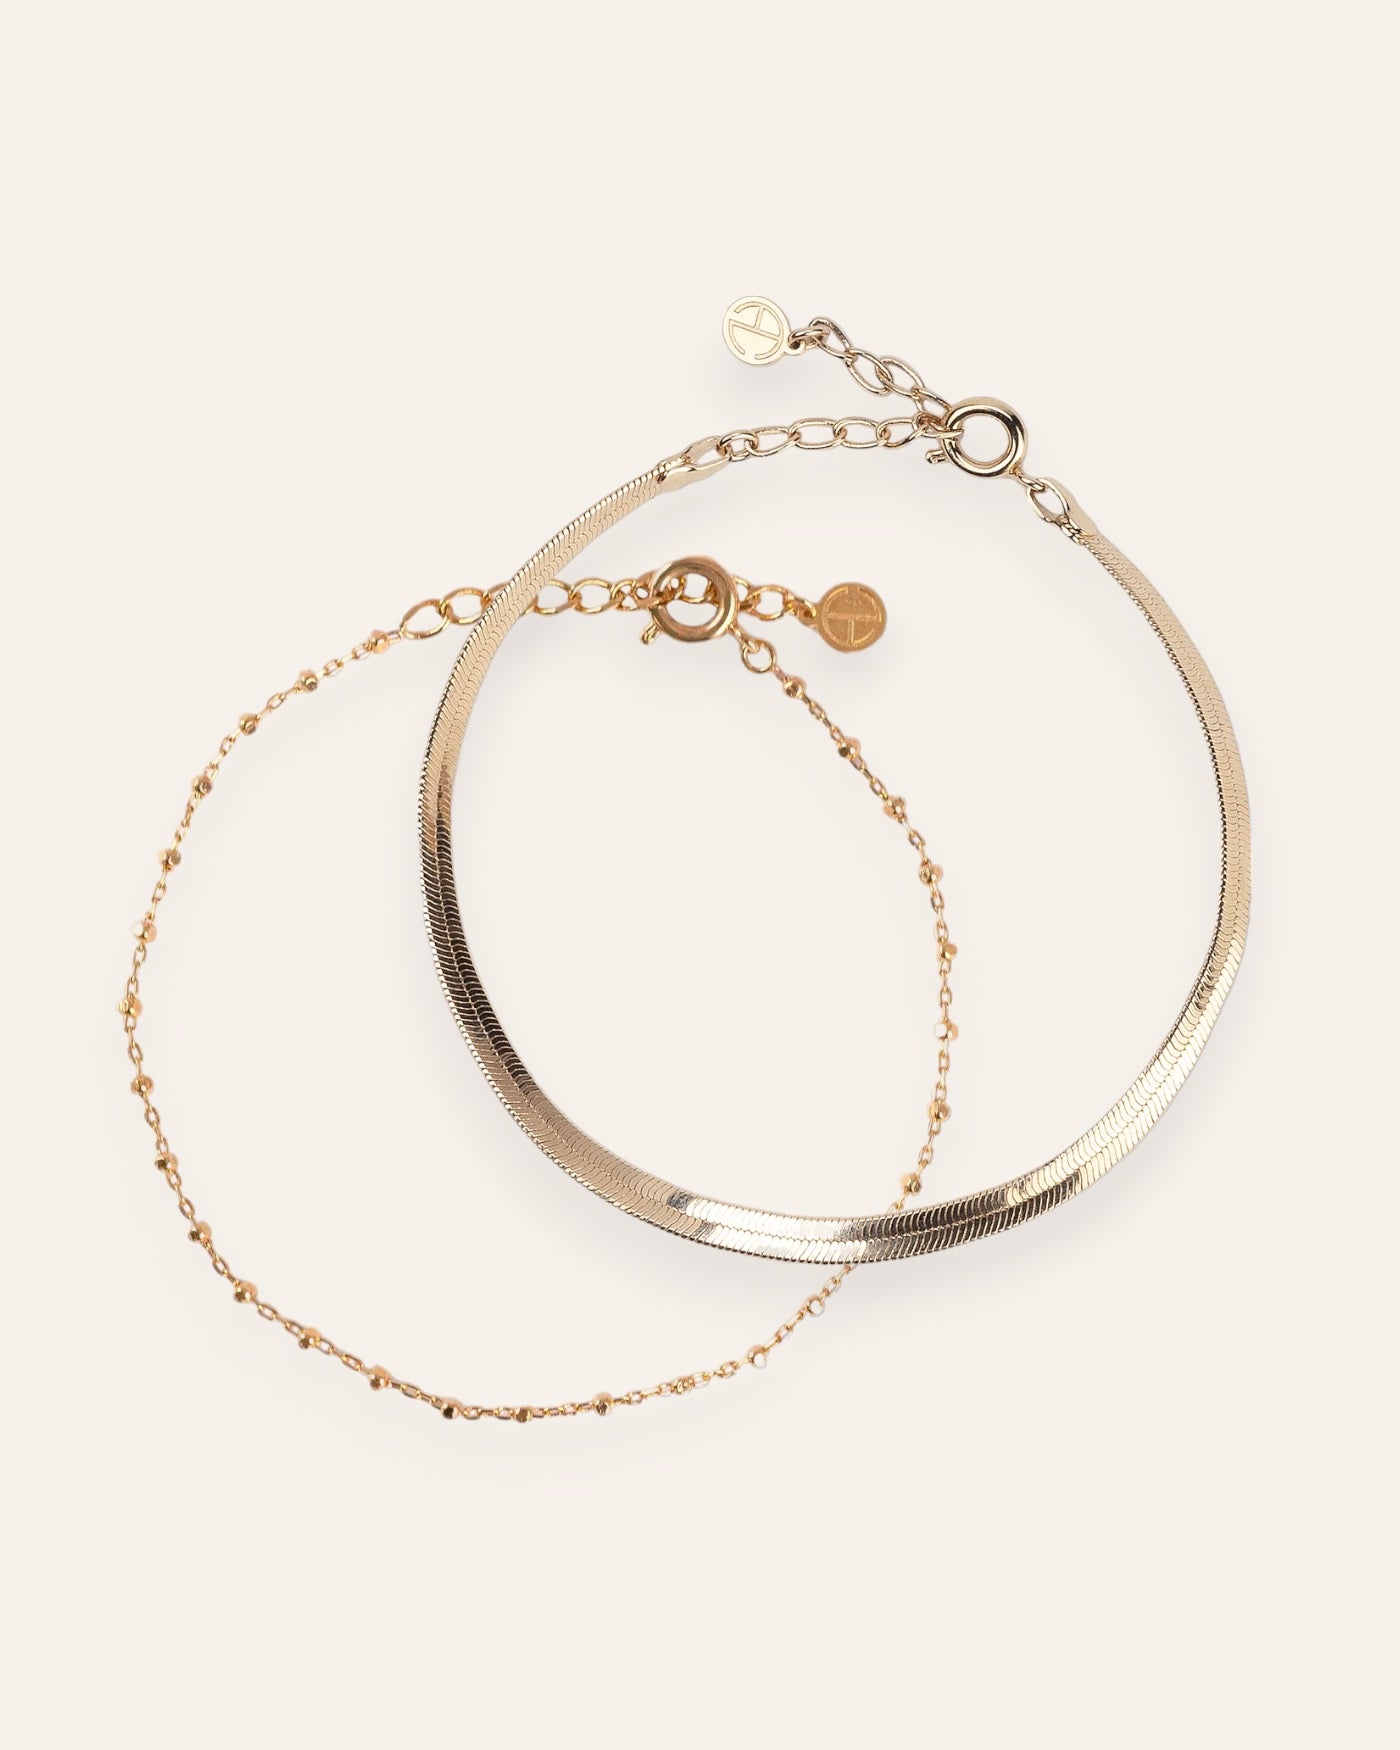 Composition de deux bracelets, avec un bracelet en chaîne fine avec des petites mailles carrées, et un bracelet en chaîne plate en plaqué or 18 carats.